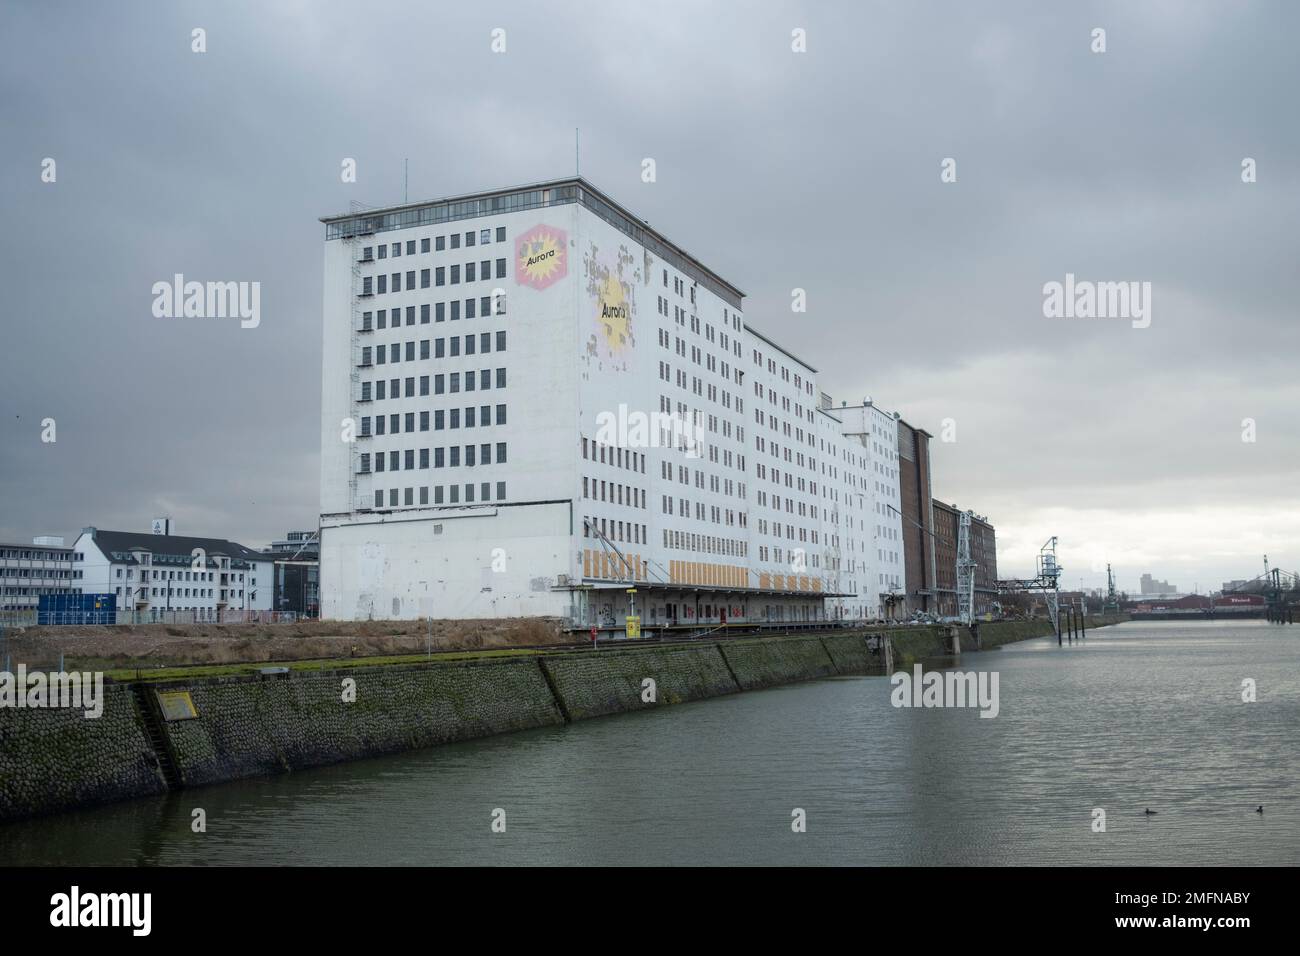 Köln, 26.12.22: Ein altes Fabrikgebäude mit Aurora Emblem.  Foto: pressefoto Mika Volkmann Stock Photo